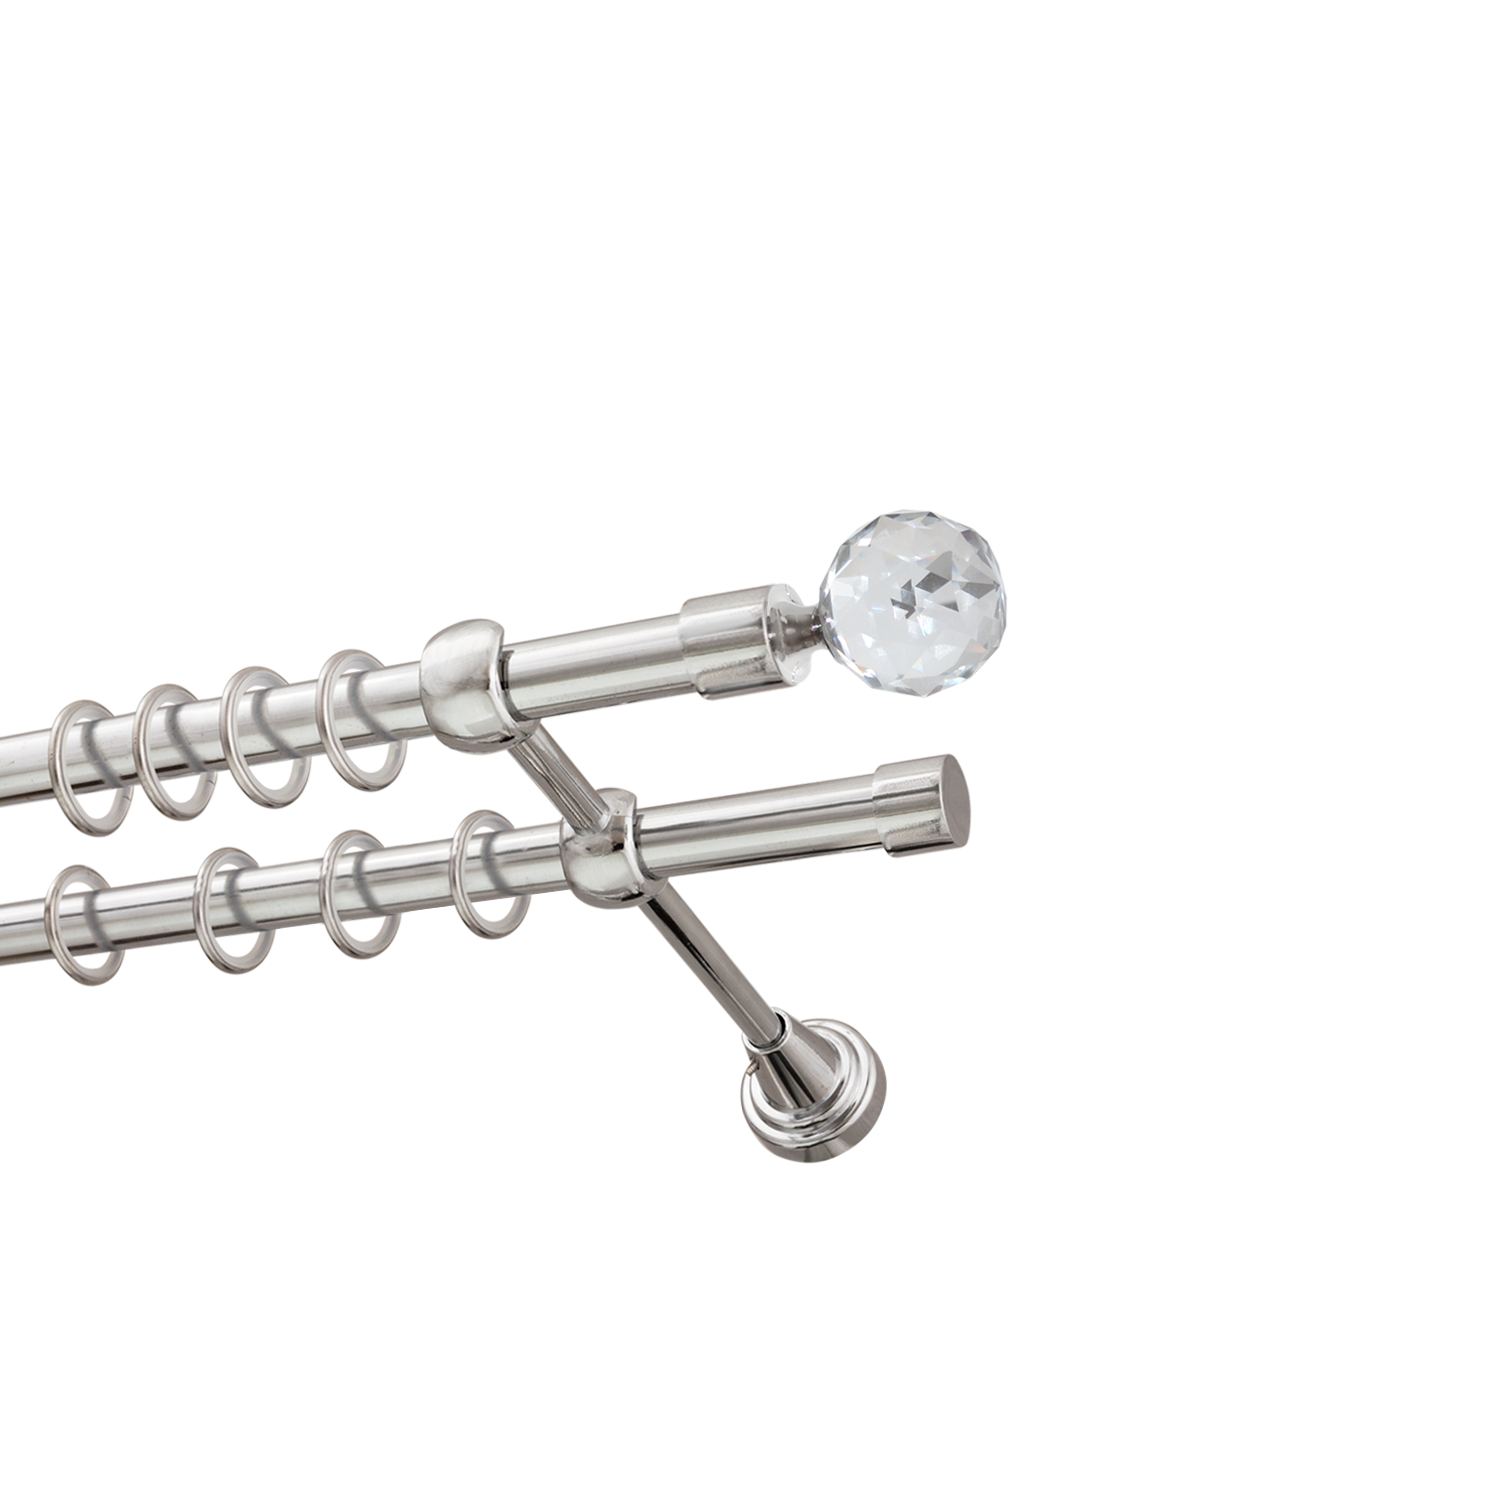 Металлический карниз для штор Карат, двухрядный 16/16 мм, серебро, гладкая штанга, длина 140 см - фото Wikidecor.ru